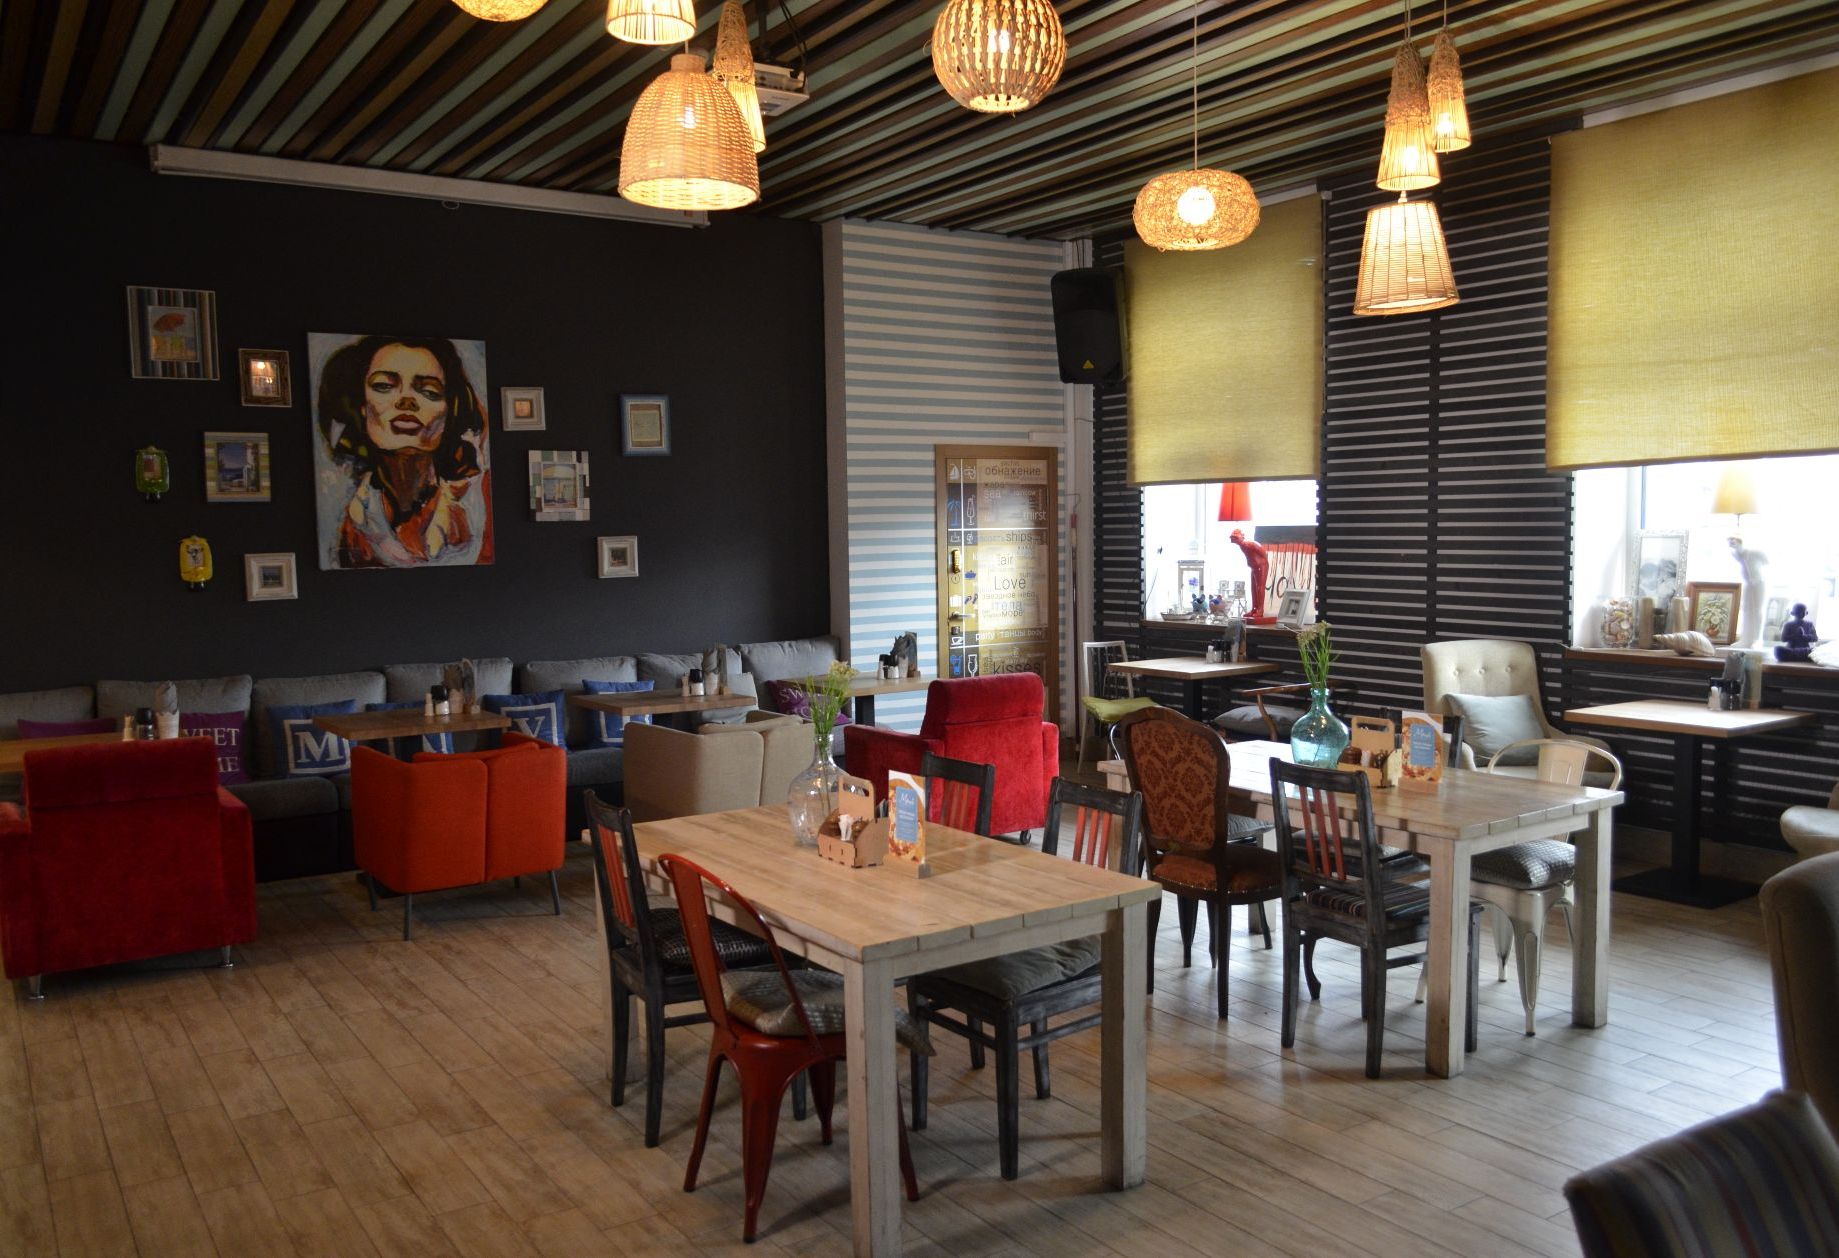 Фото ресторан, банкетный зал «Cafe Mavi» – смотри на сайте!